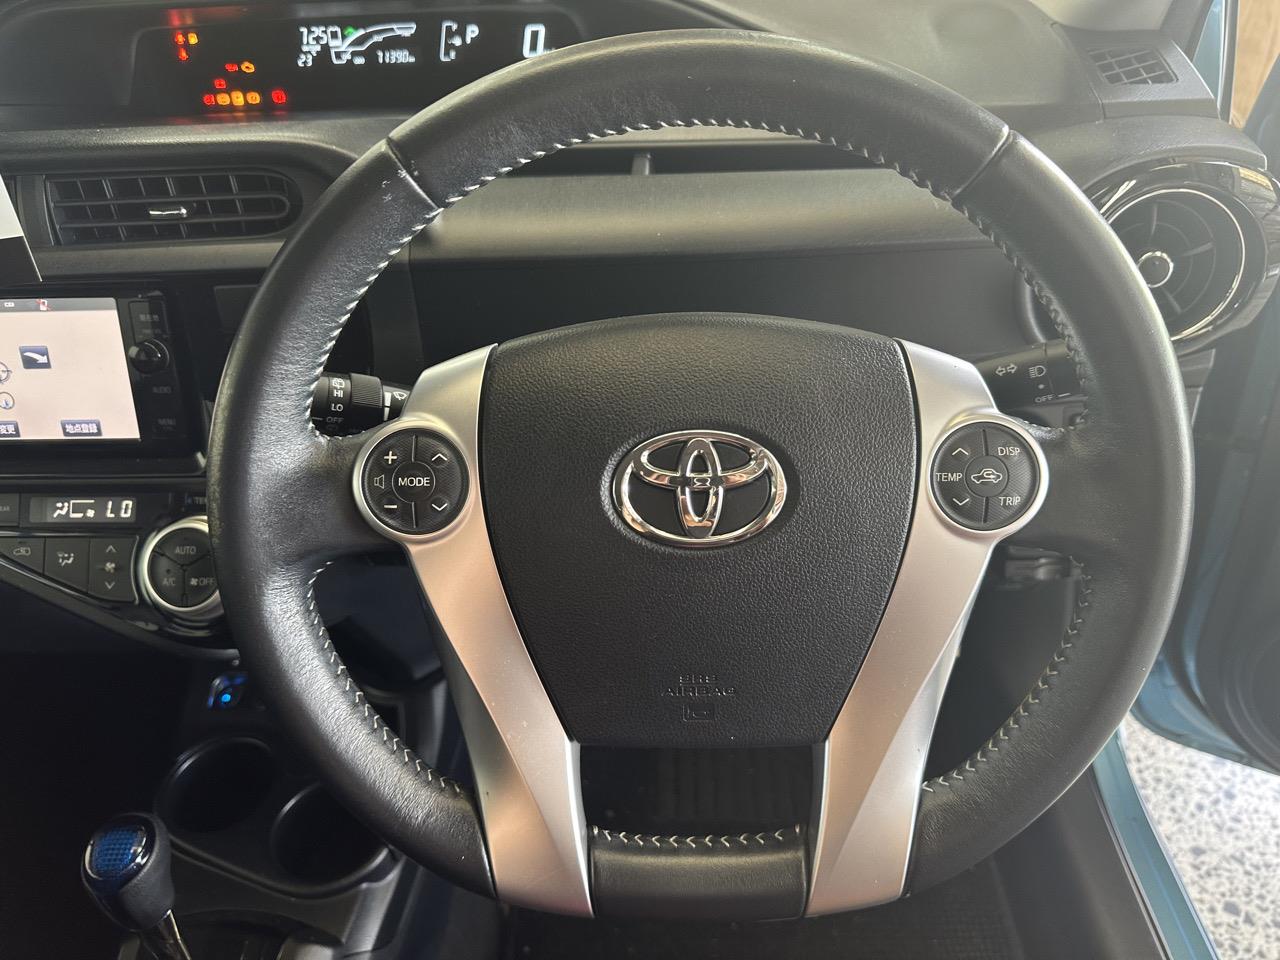 2015 Toyota AQUA